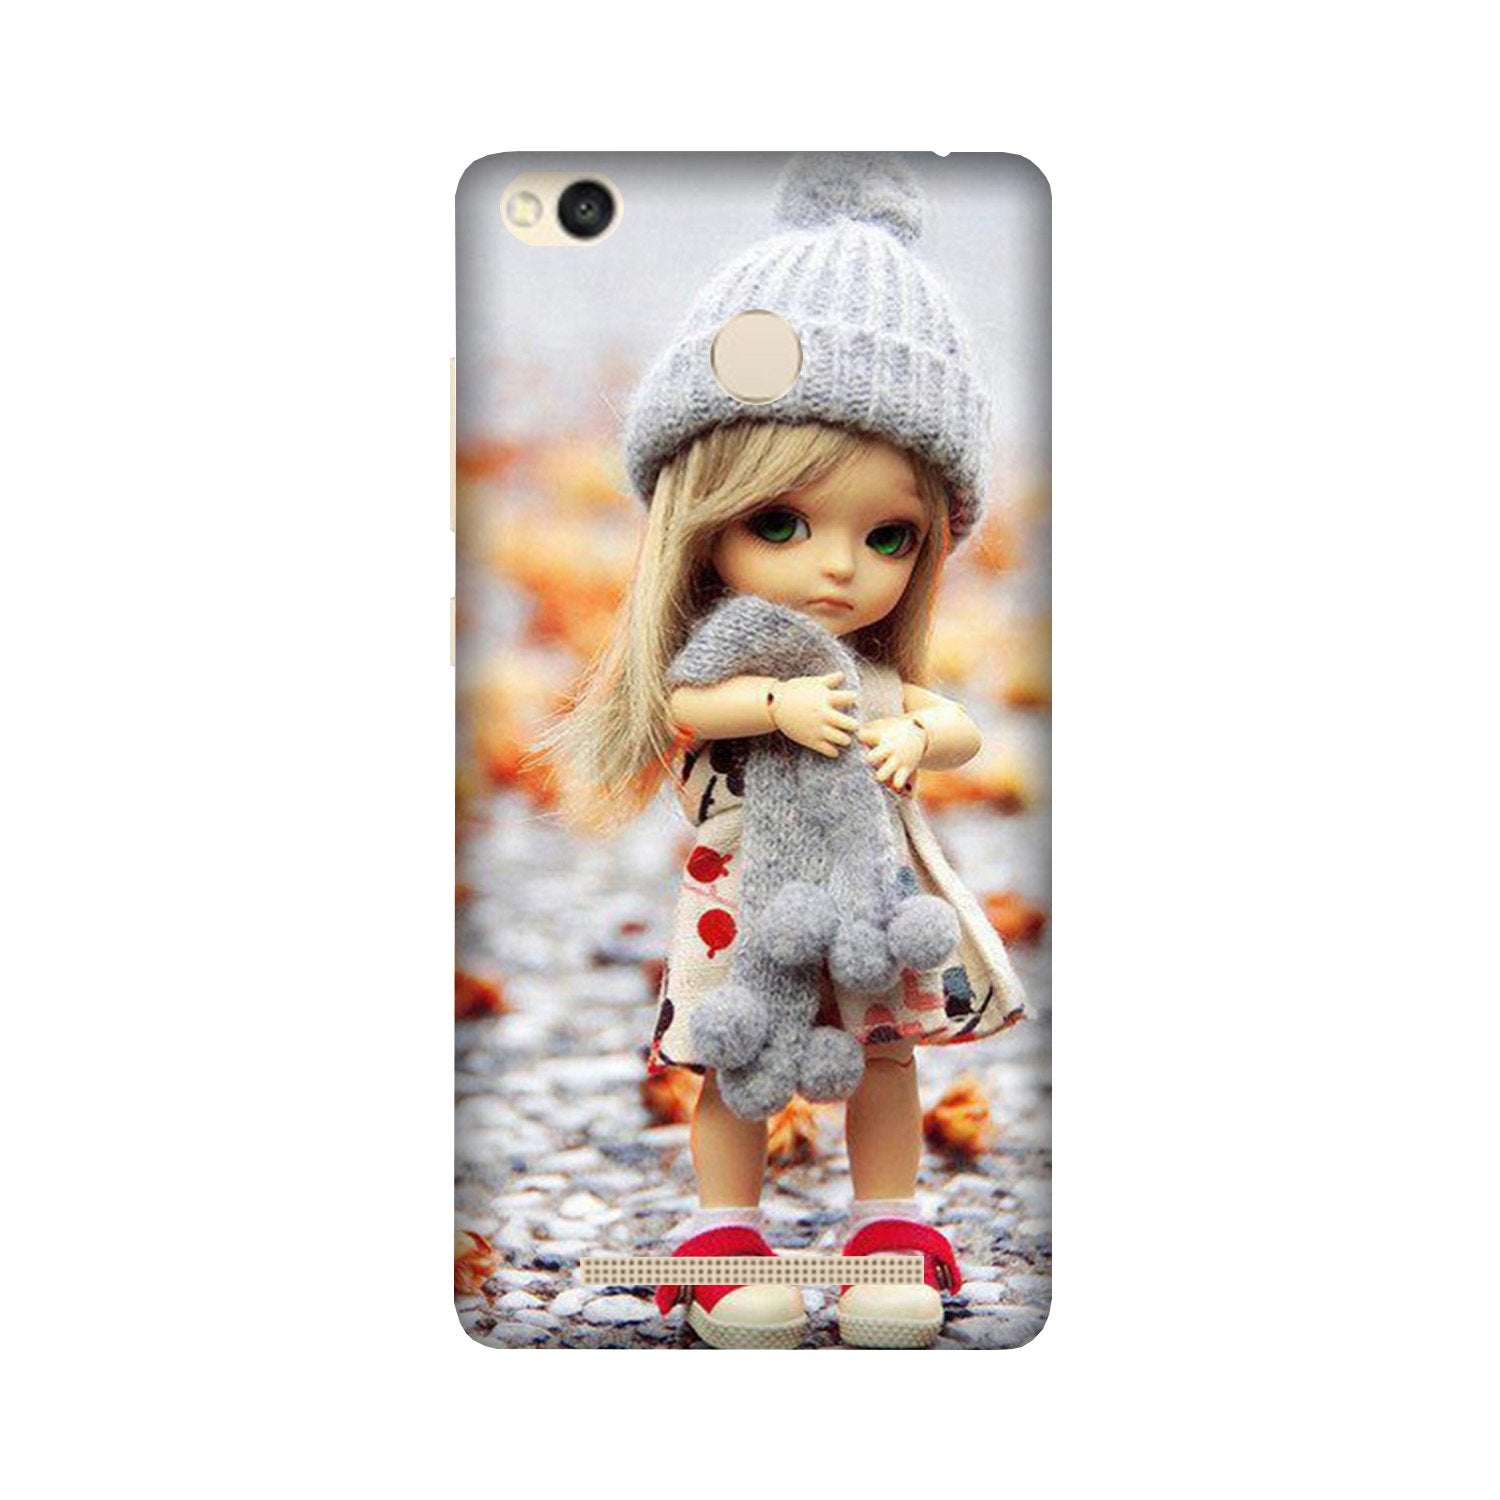 Cute Doll Case for Redmi 3S Prime